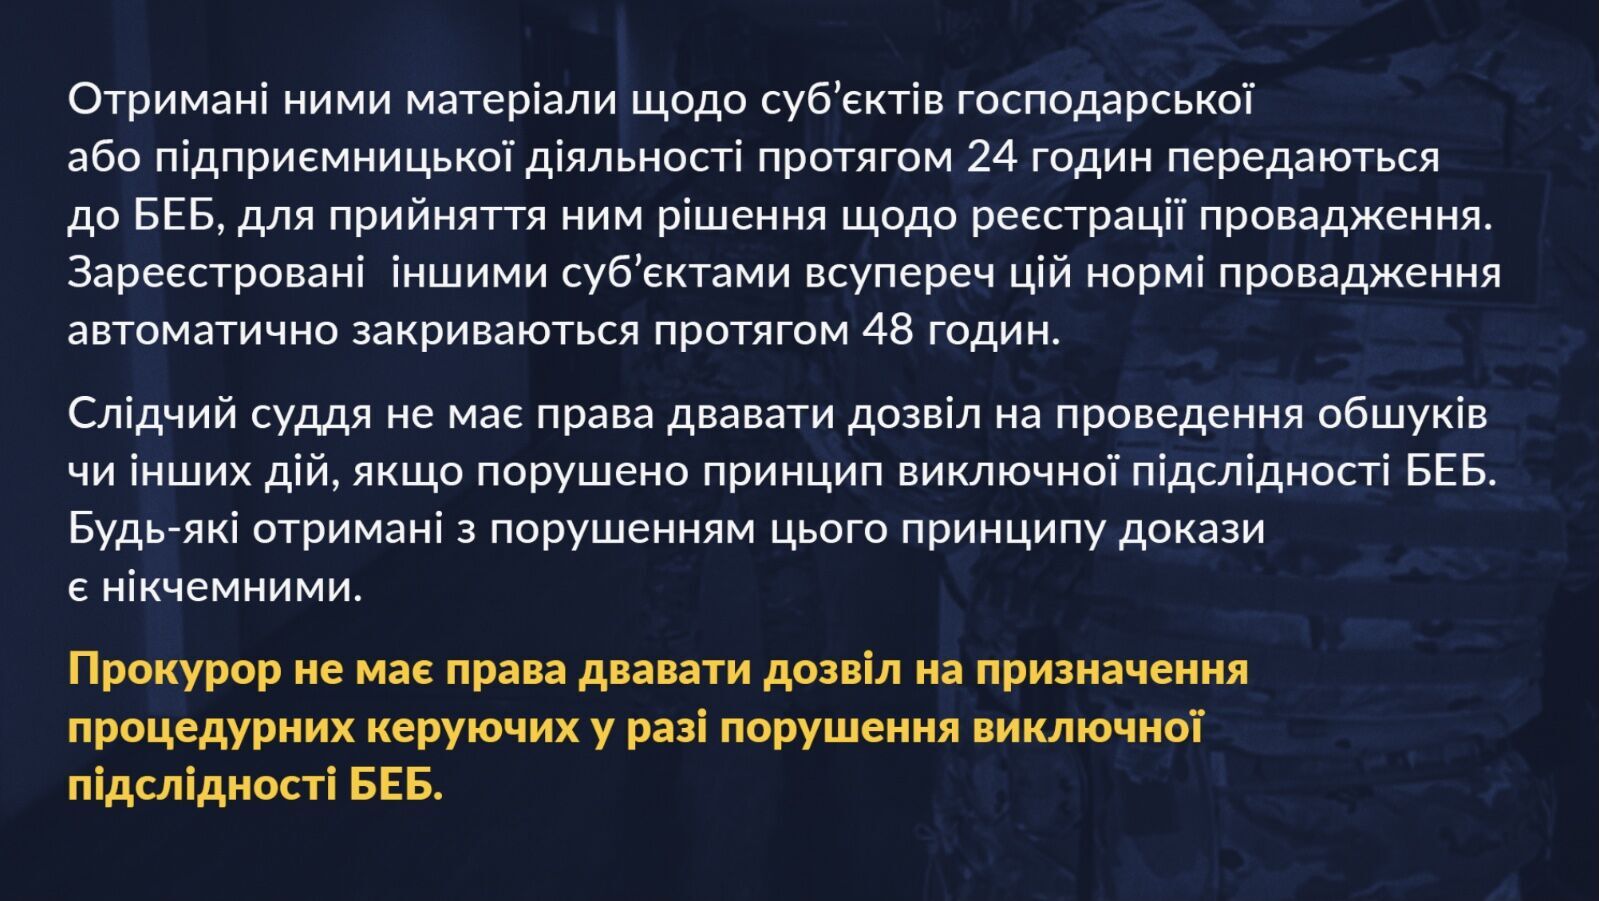 Порошенко представил план защиты бизнеса в Украине и призвал власть к партнерству